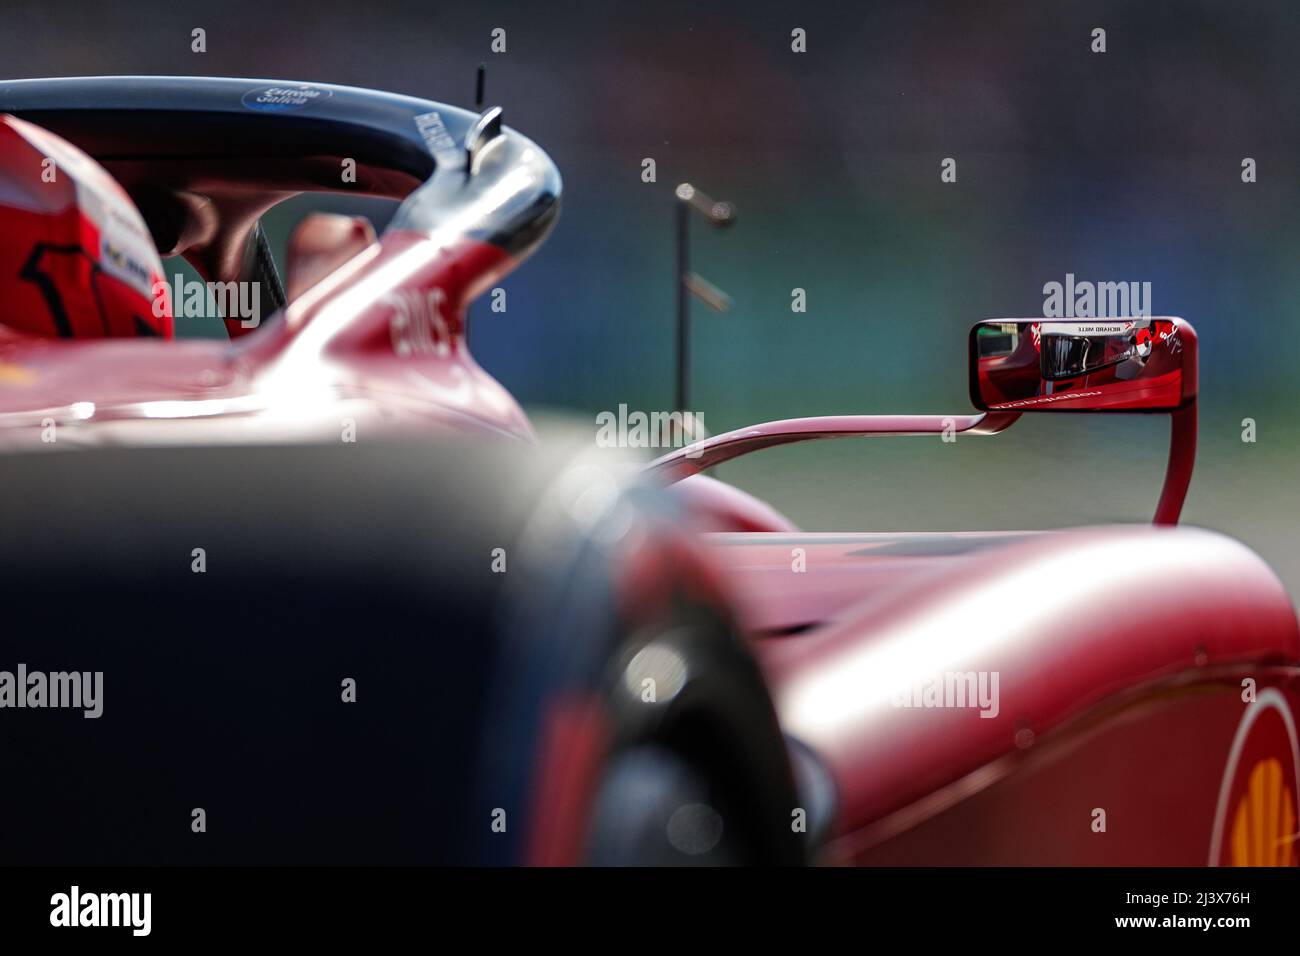 Ferrari mirror scuderia ferrari hi-res stock photography and images - Alamy